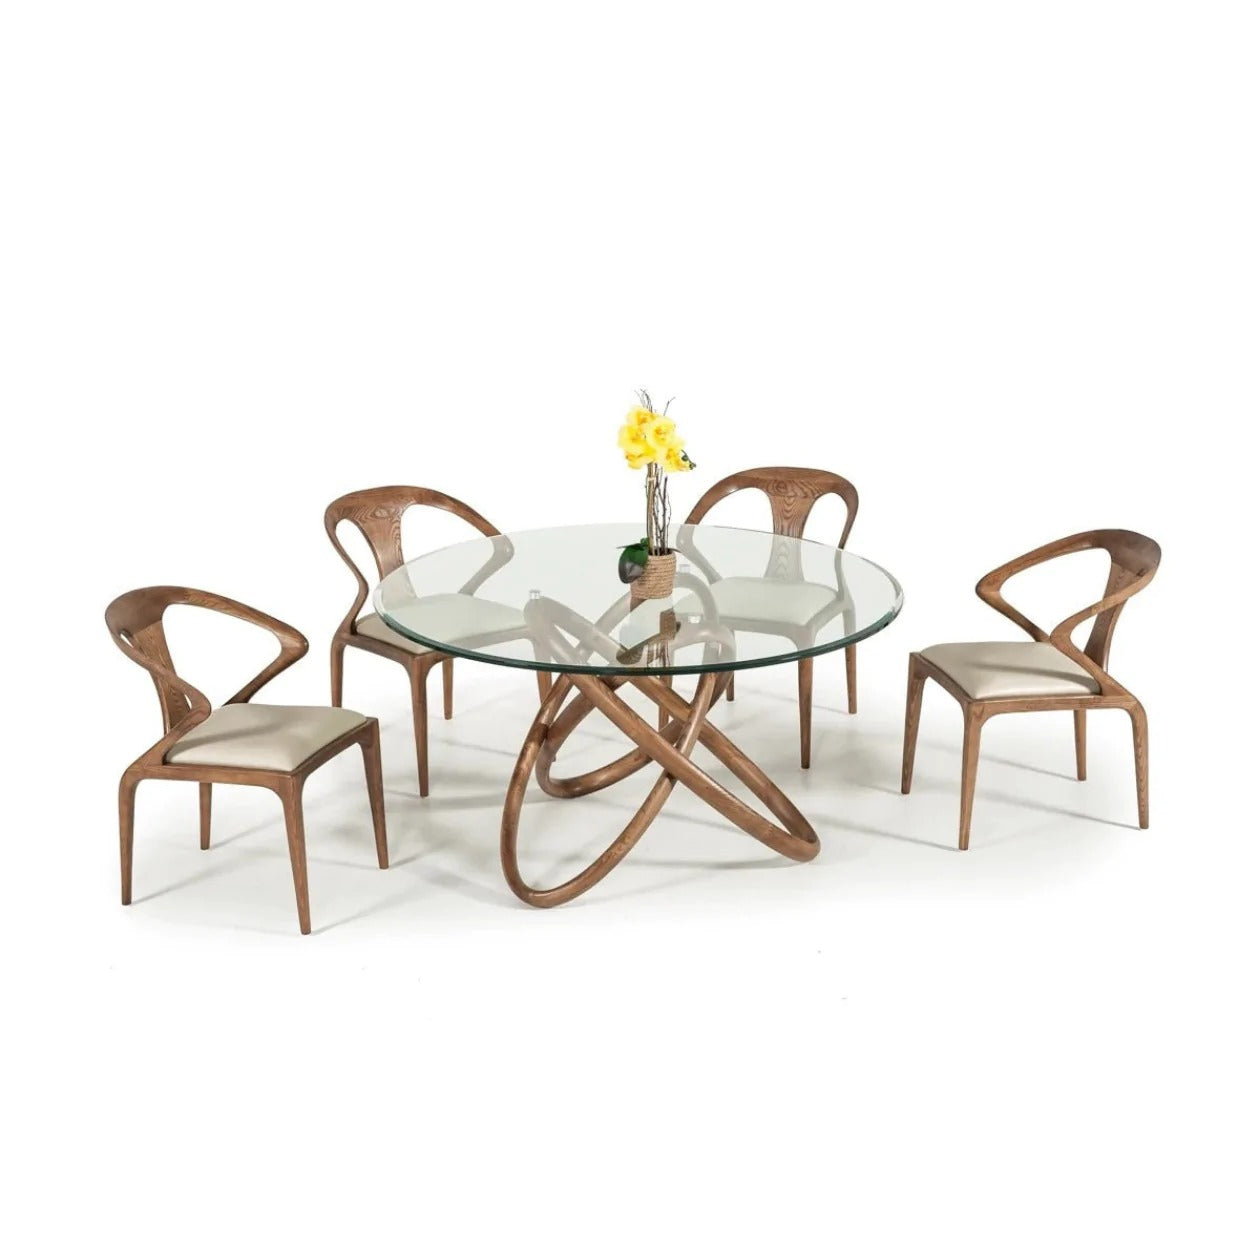 Dining Table, Designer Dining Table, Dining Table Set, Folding Dining Table, Wooden Dining Table